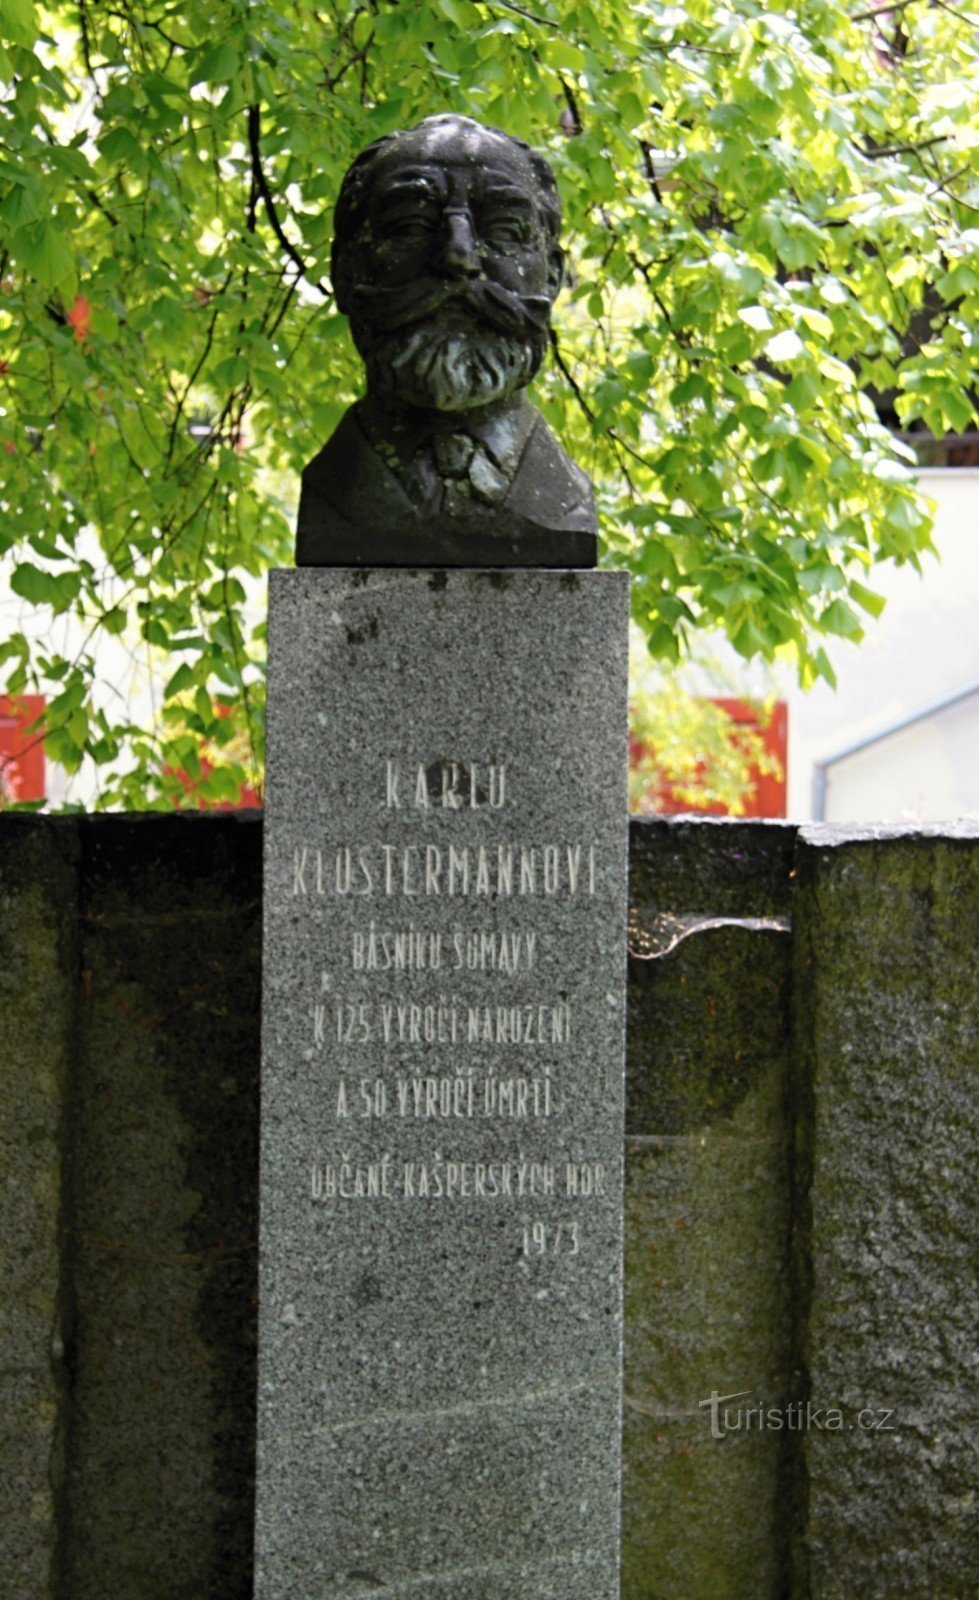 Monumento a Karel Klostrmann